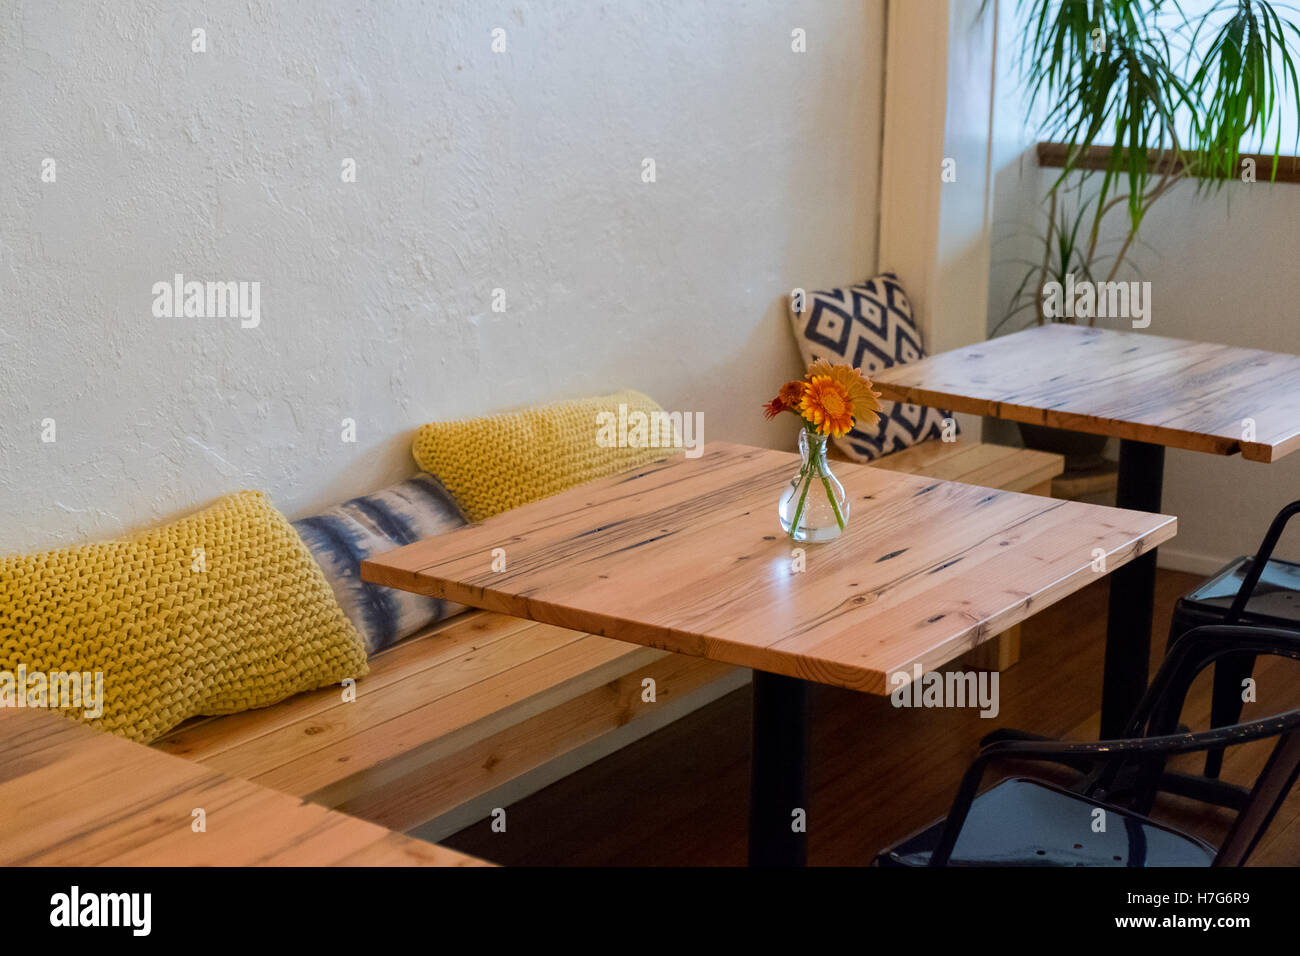 Sitzbank in einem Café-Restaurant mit kleinen Café-Tischen und Kissen. Stockfoto